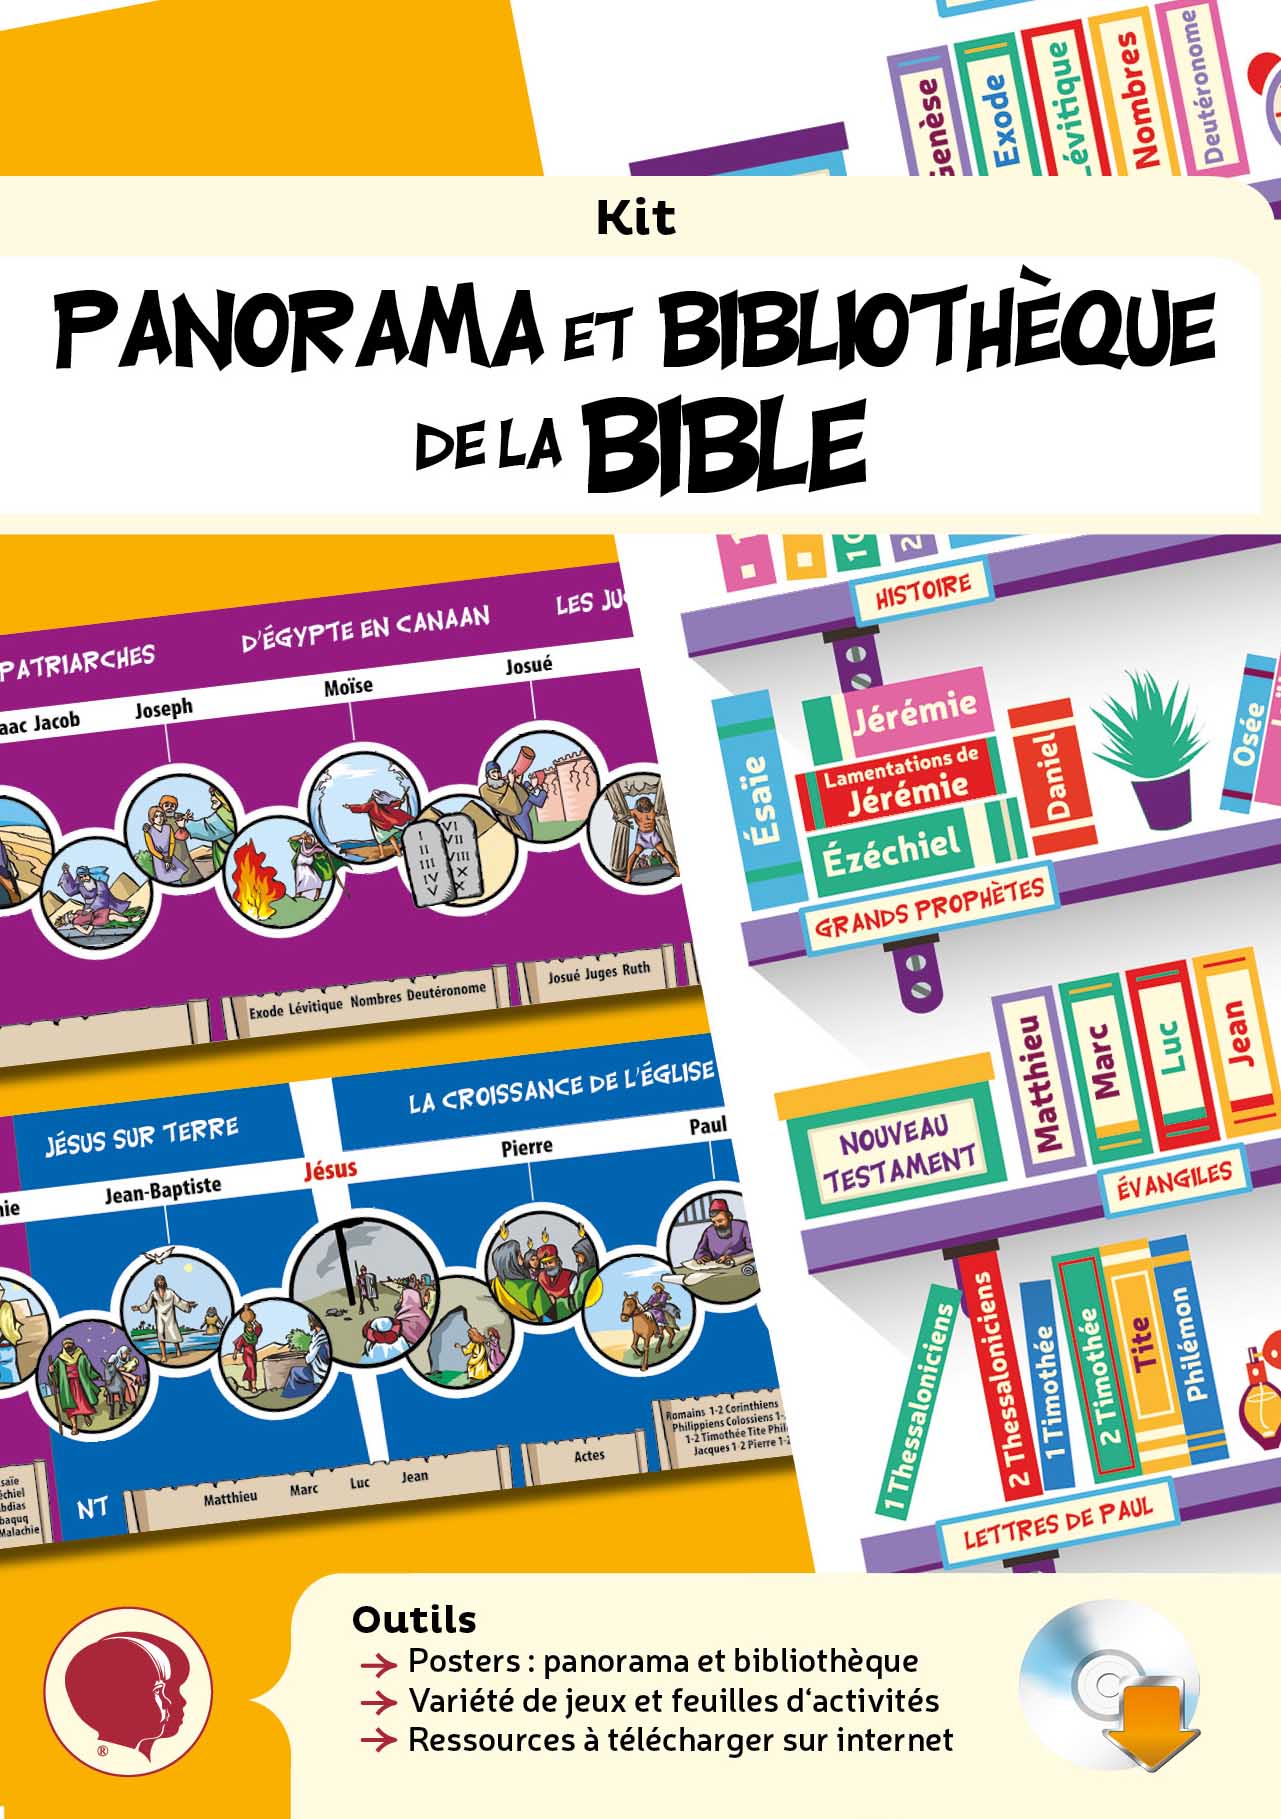 Panorama et bibliothèque de la Bible - Kit